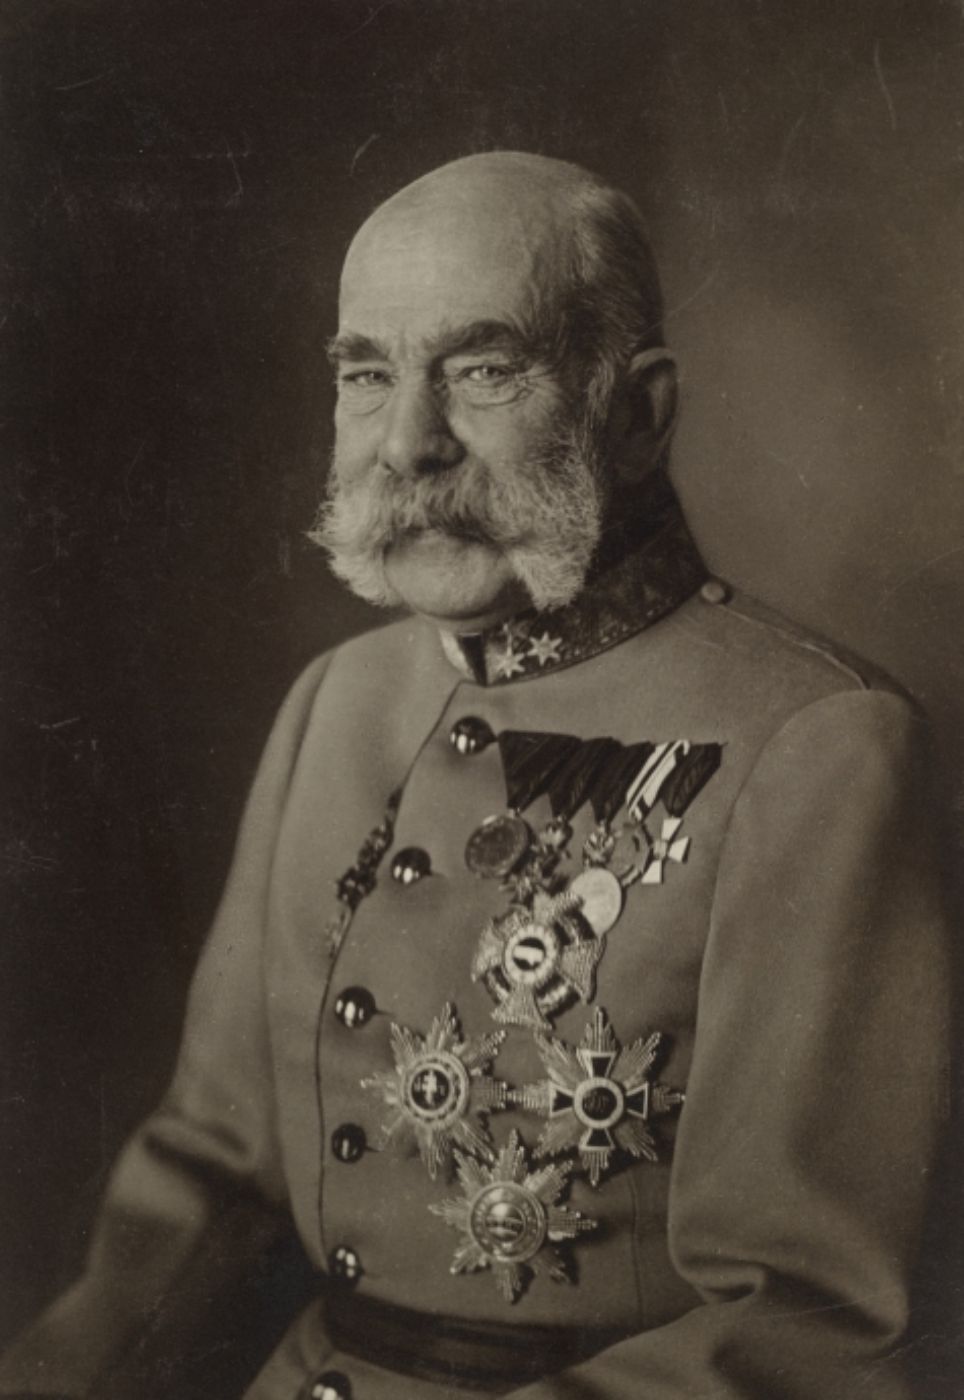 Schwarz-weiß-Portrait von Kaiser Franz Josef zur Illustration; Der Kaiser hat einen buschigen grau-weißen Bart, er trägt eine Uniform mit vielen Orden.